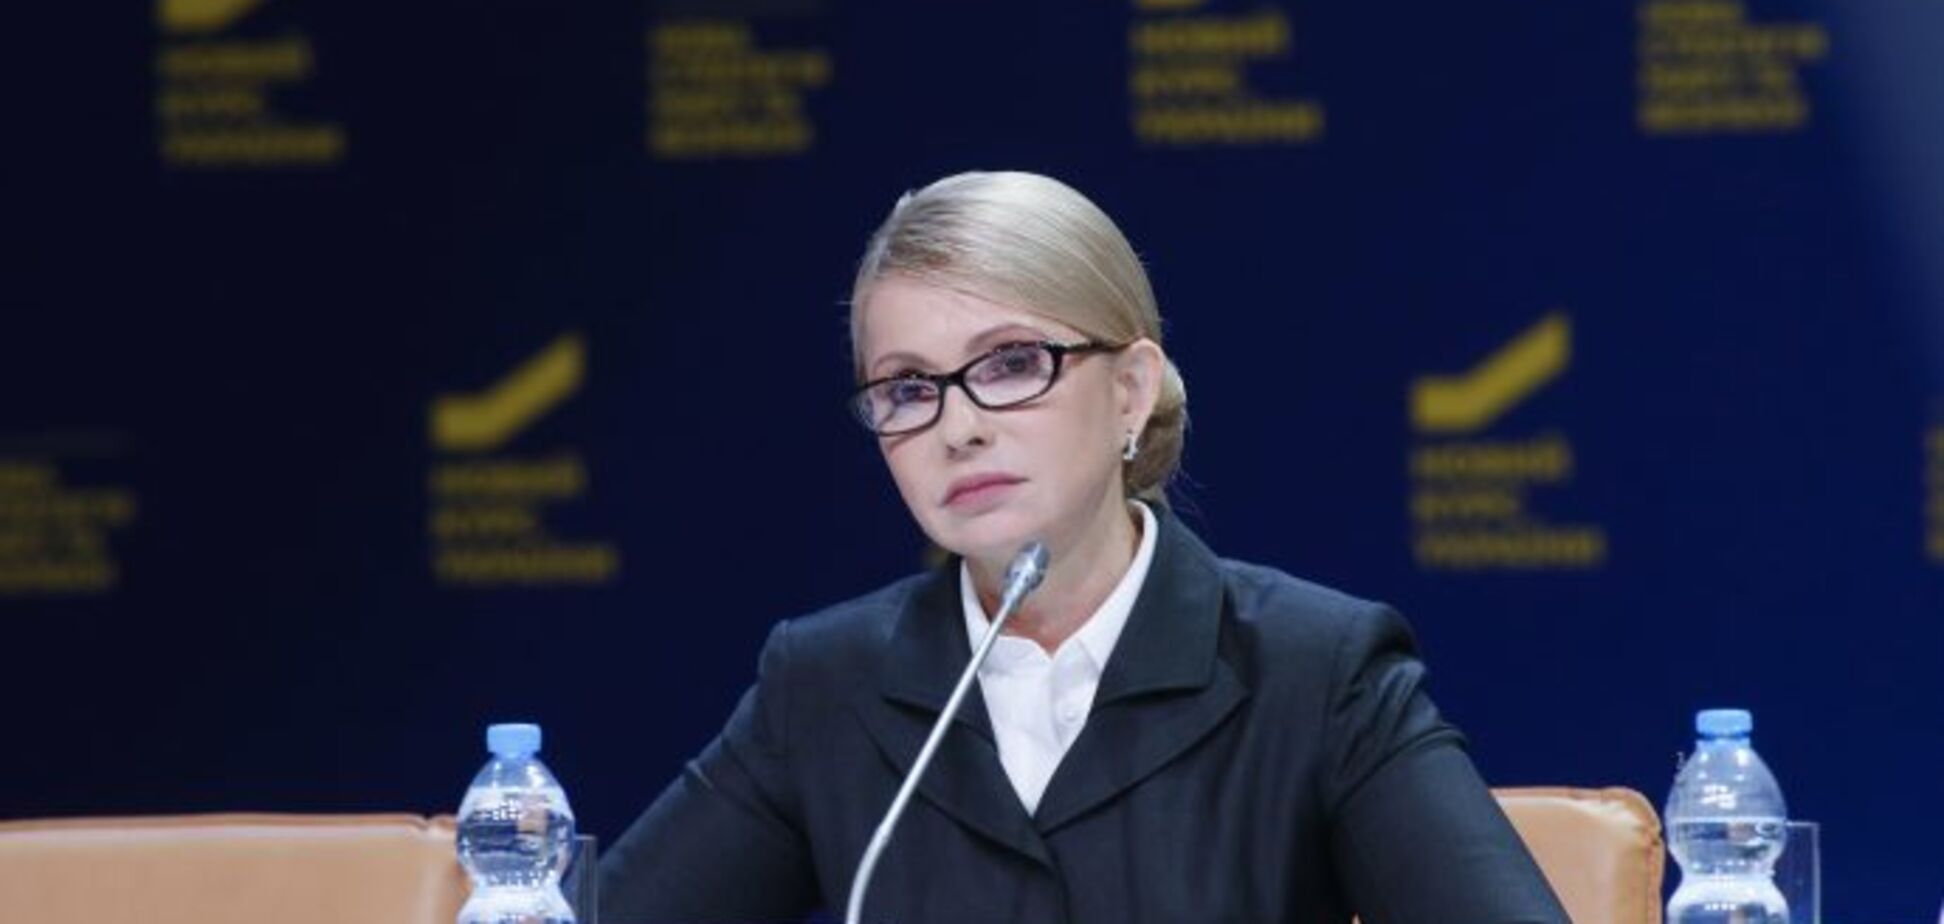 Тимошенко: ми готові до співпраці з усіма демократичними силами